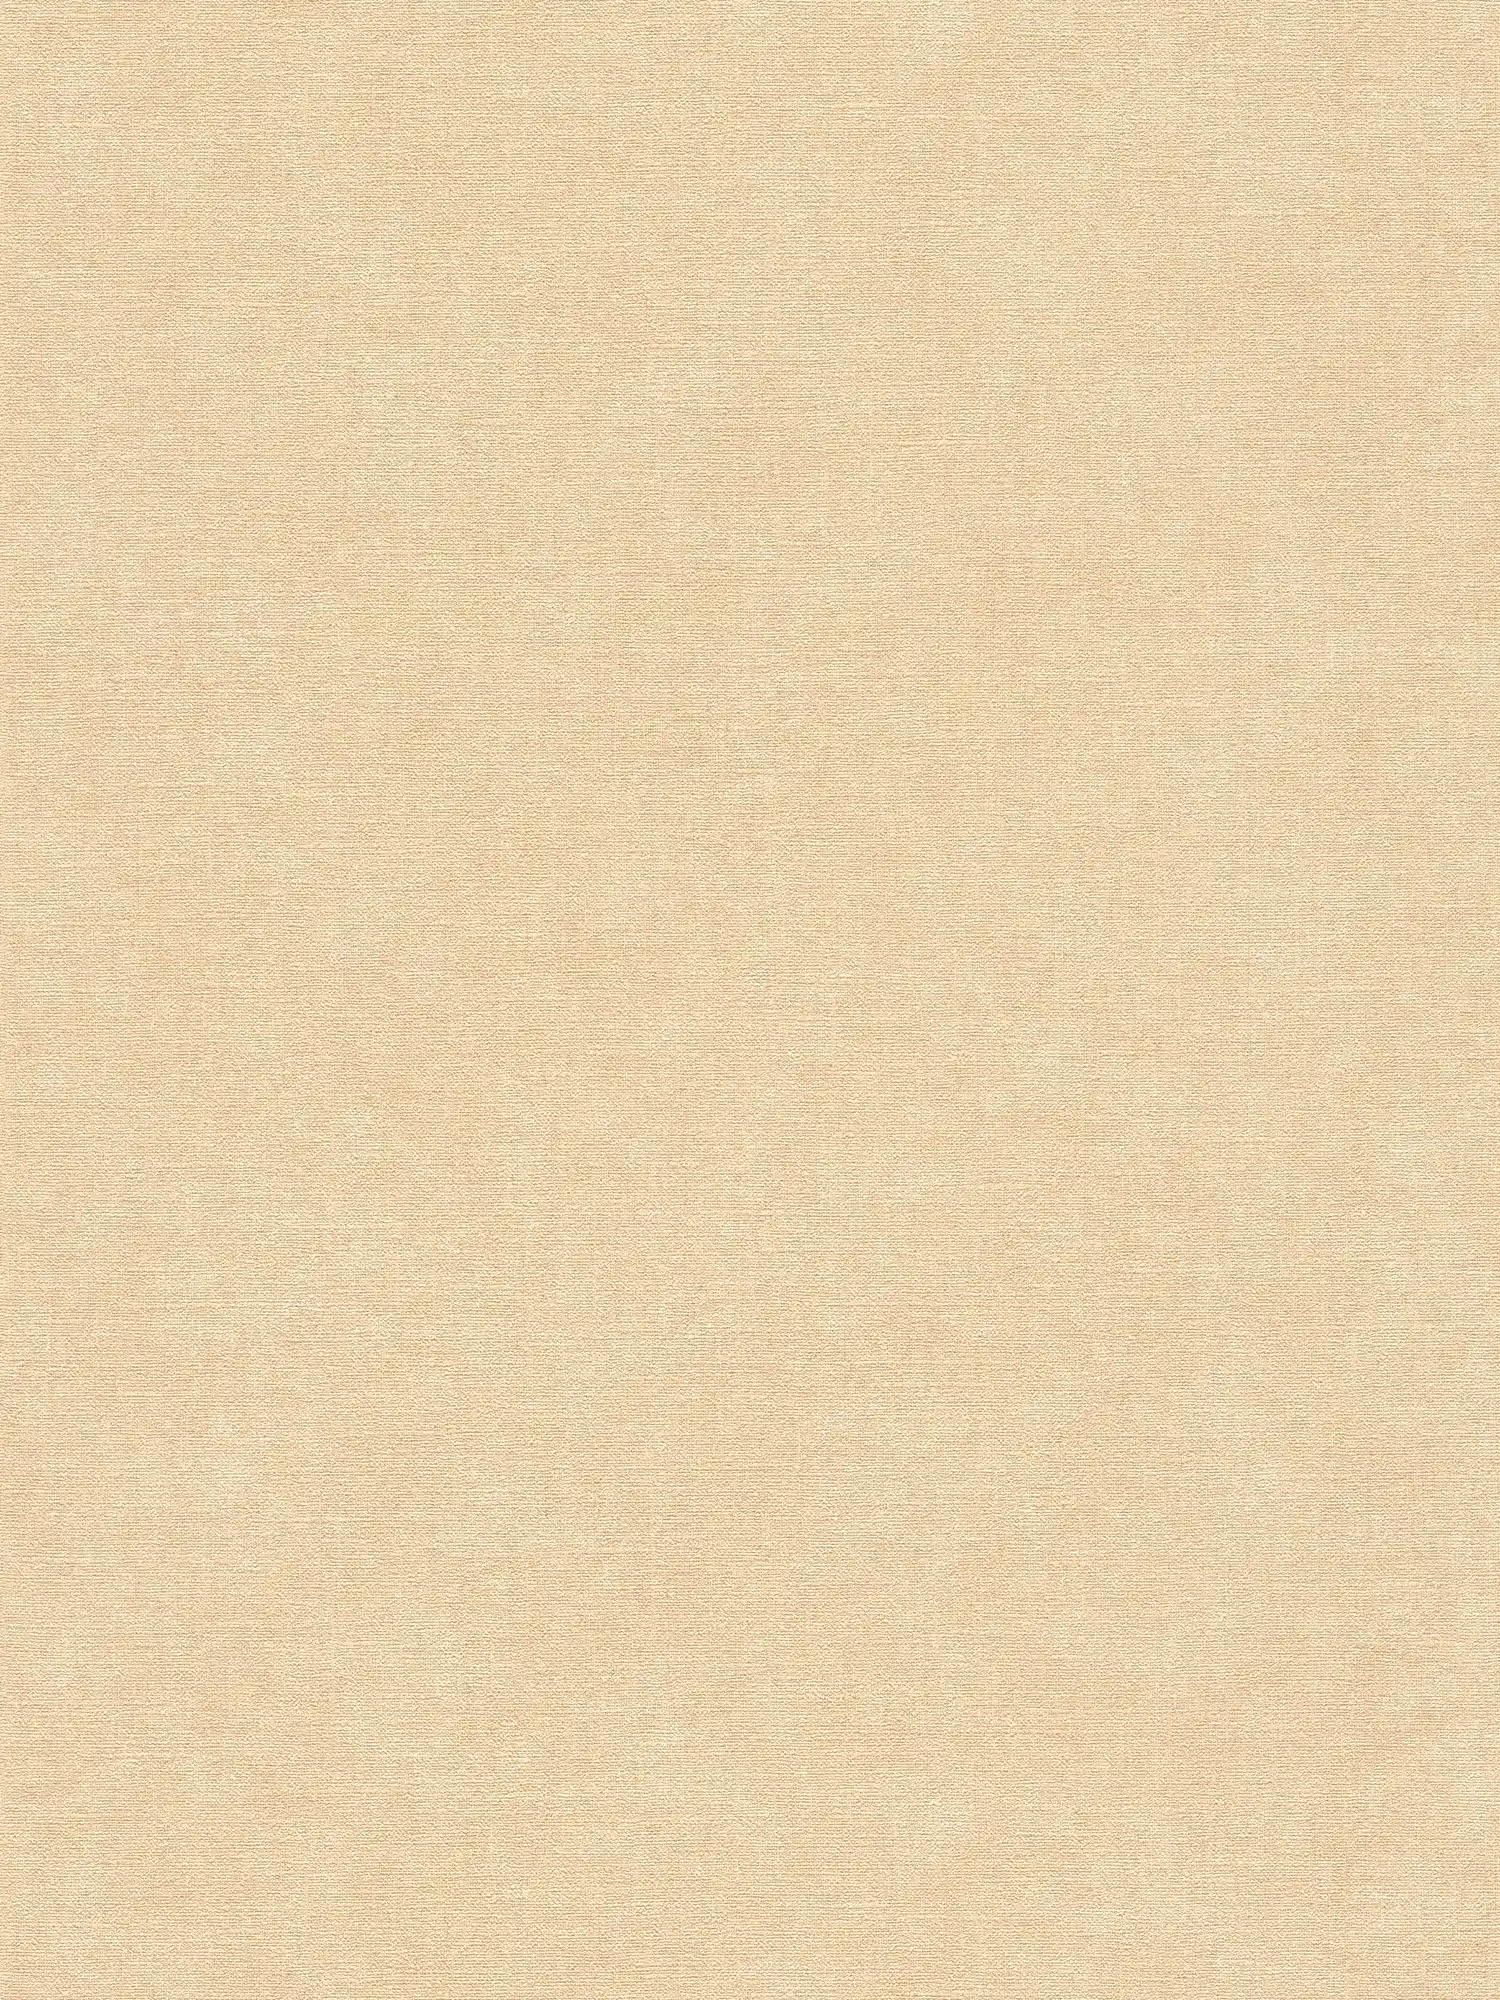 Papel pintado monocolor de tejido-no tejido con aspecto textil - beige, marrón
